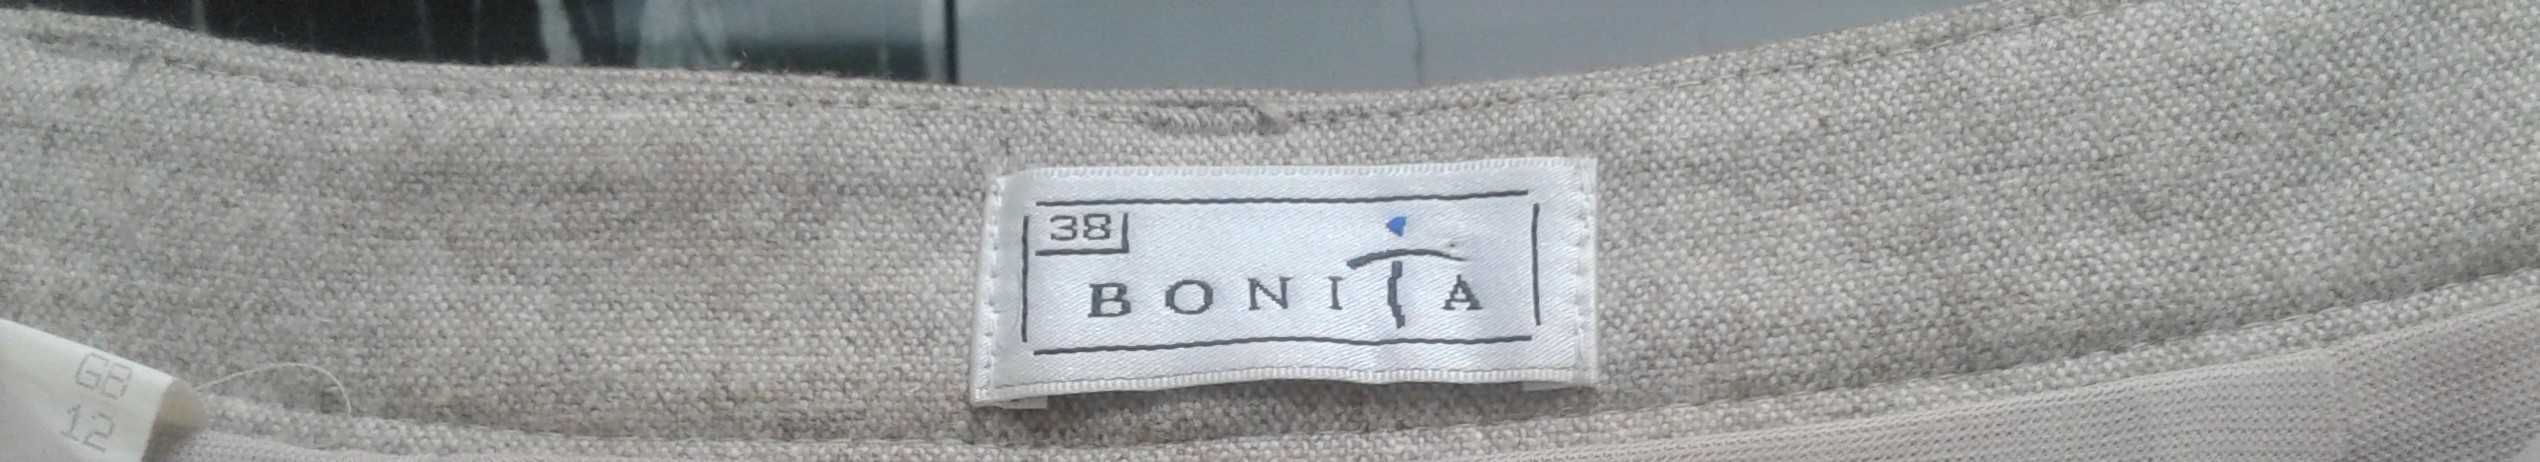 Długa ciepła spódnica marki Bonita